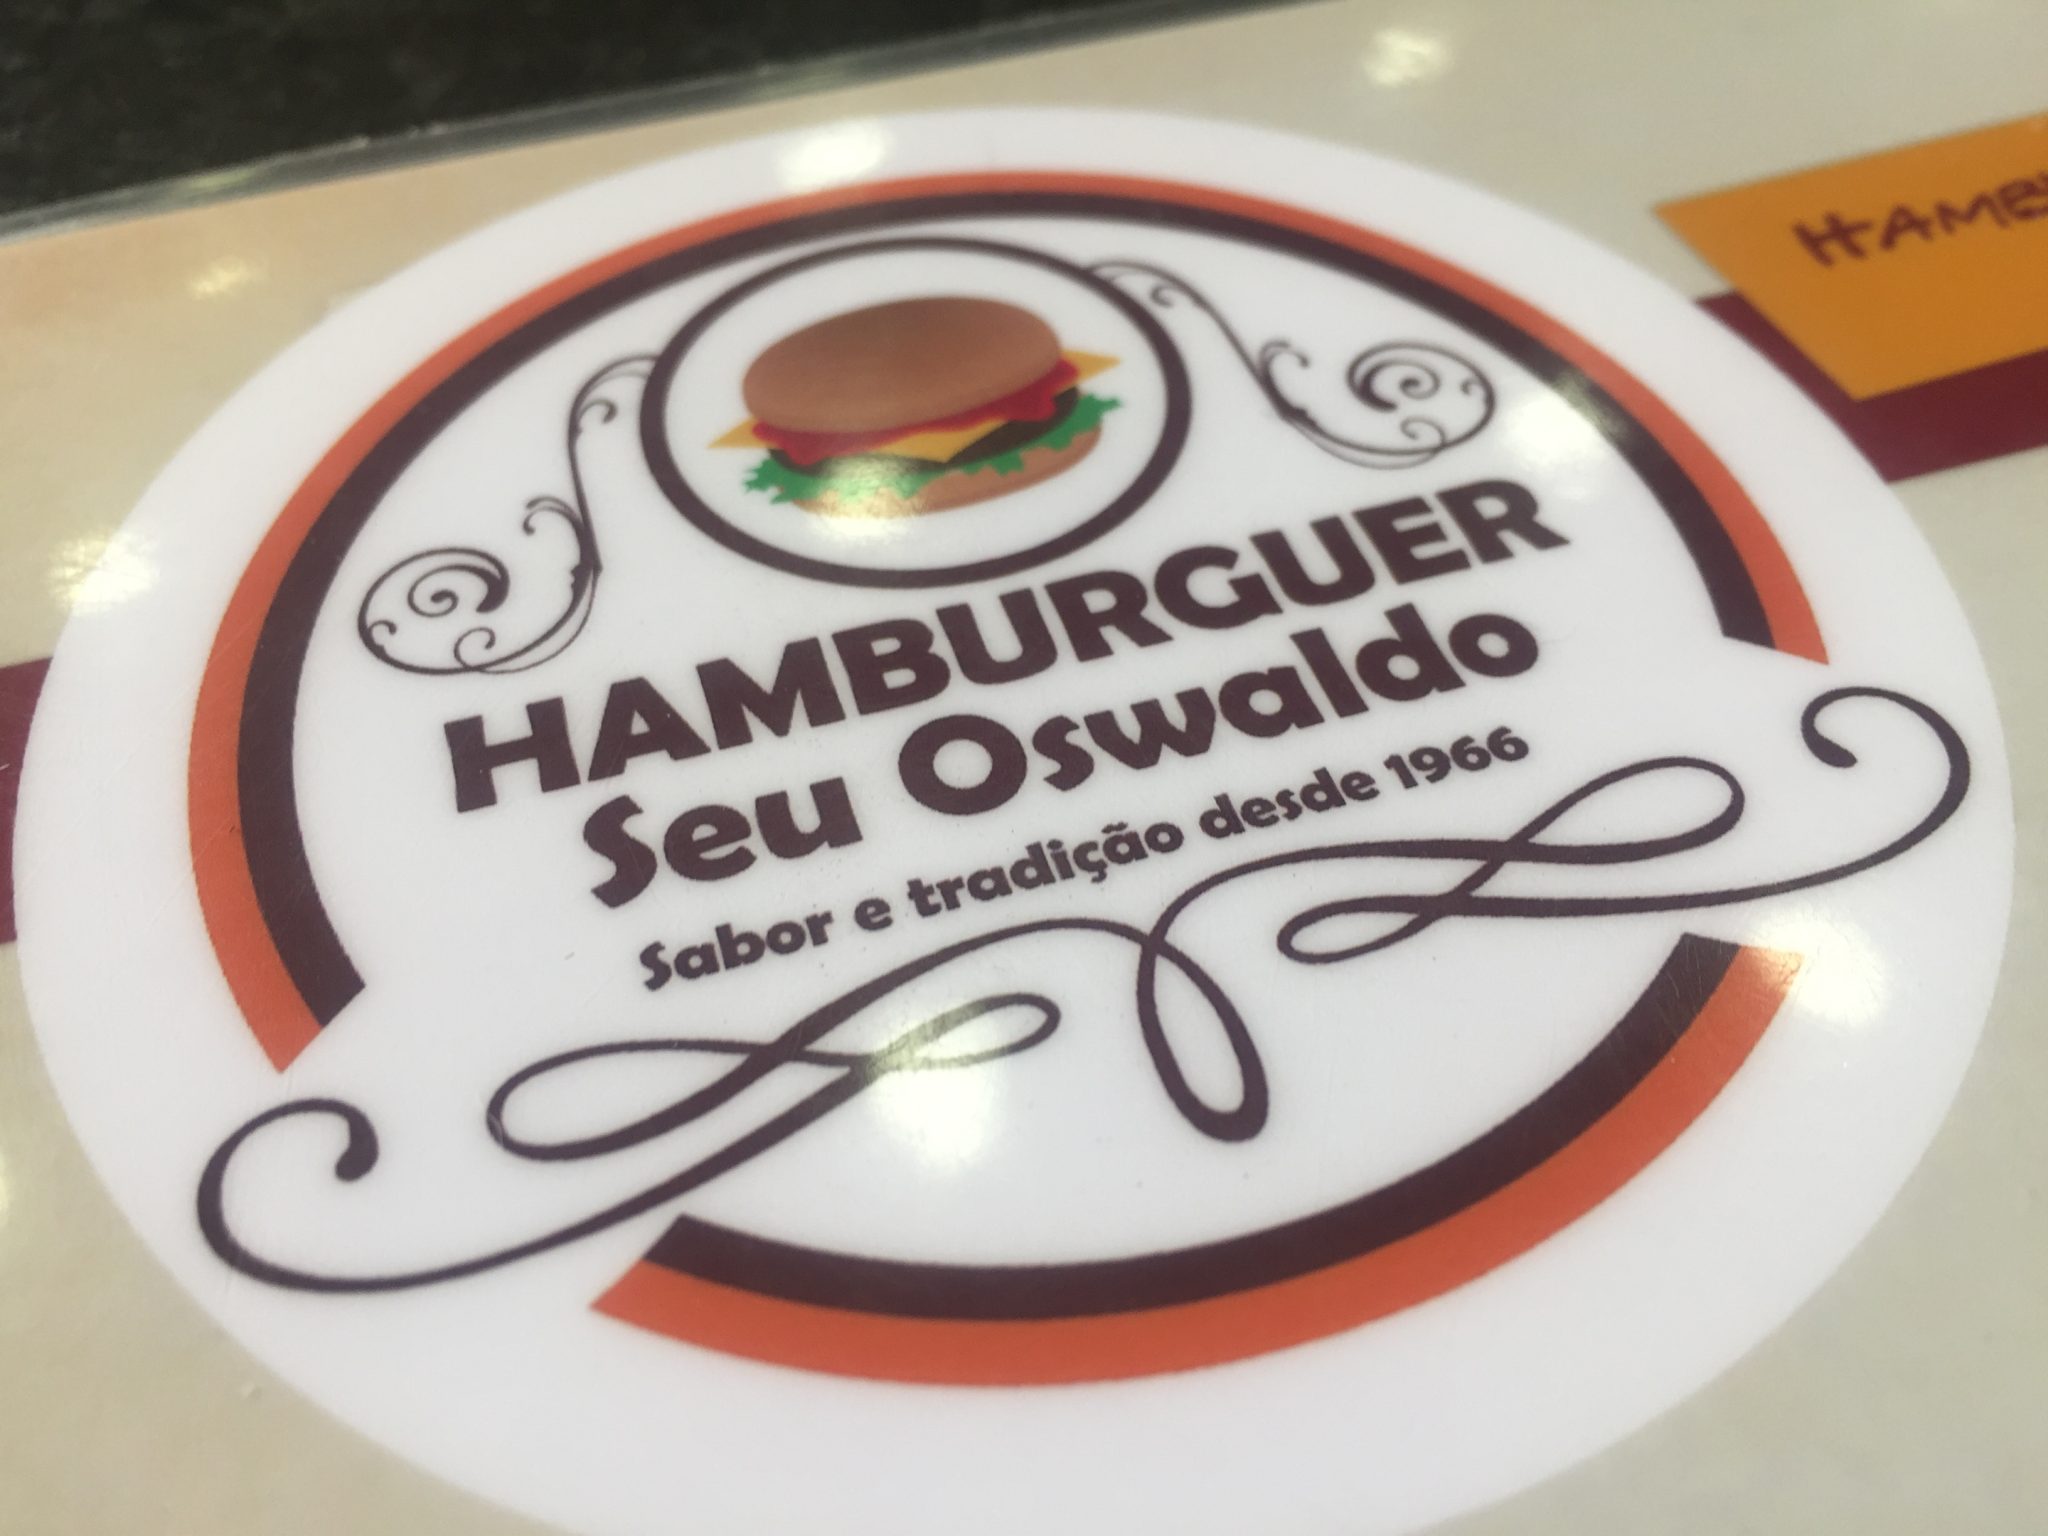 img 1479 - Seu Oswaldo, simplicidade e sabor em um hambúrguer que você precisa provar!